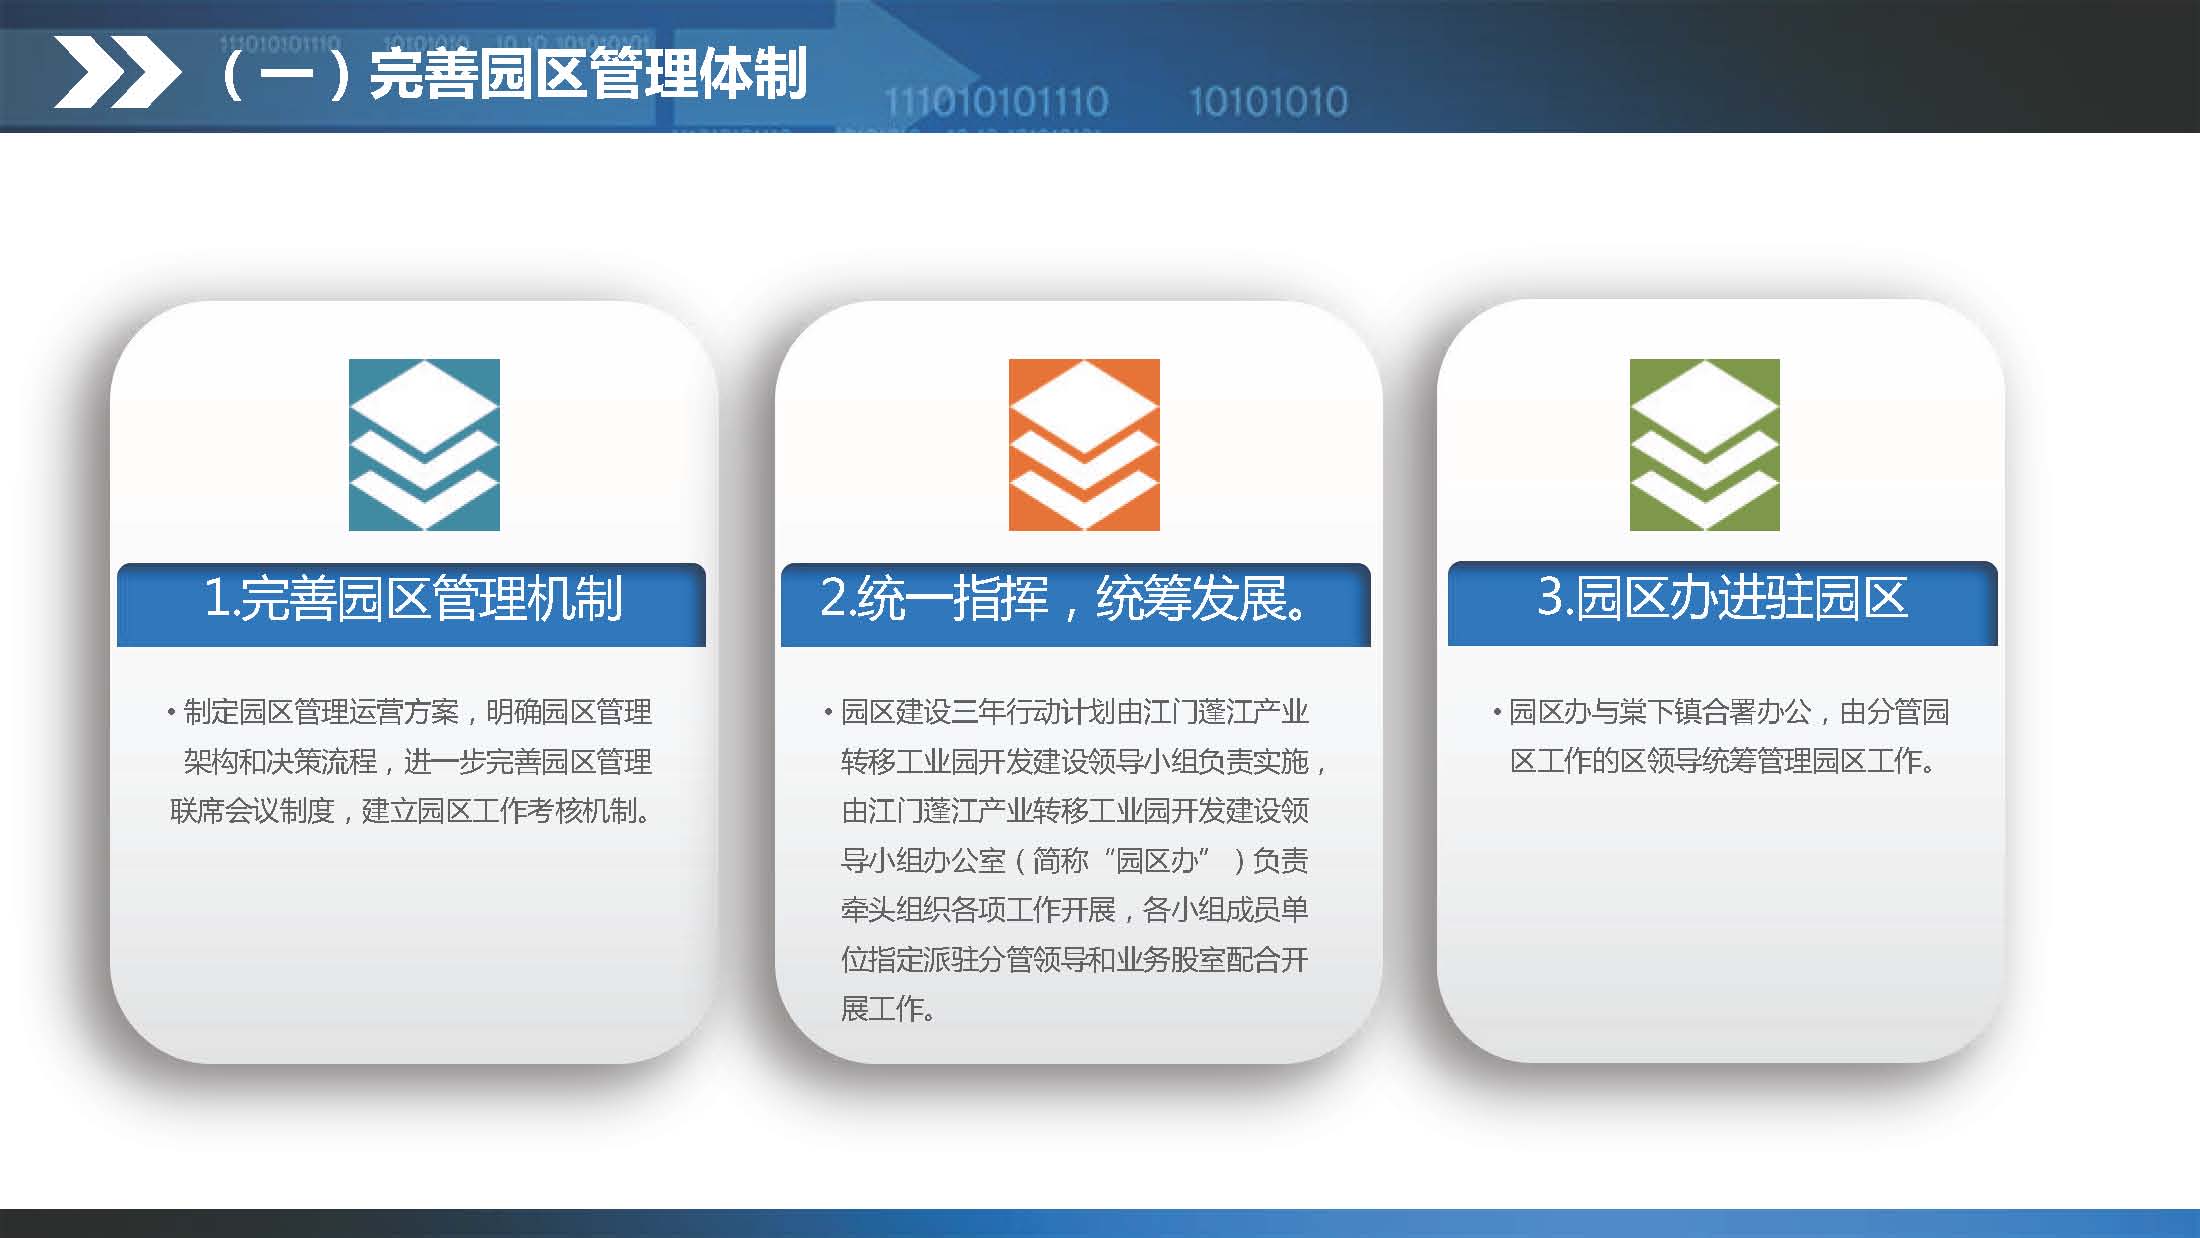 《江门蓬江产业转移工业园建设三年行动计划（2020-2022年）》图文解读_页面_17.jpg